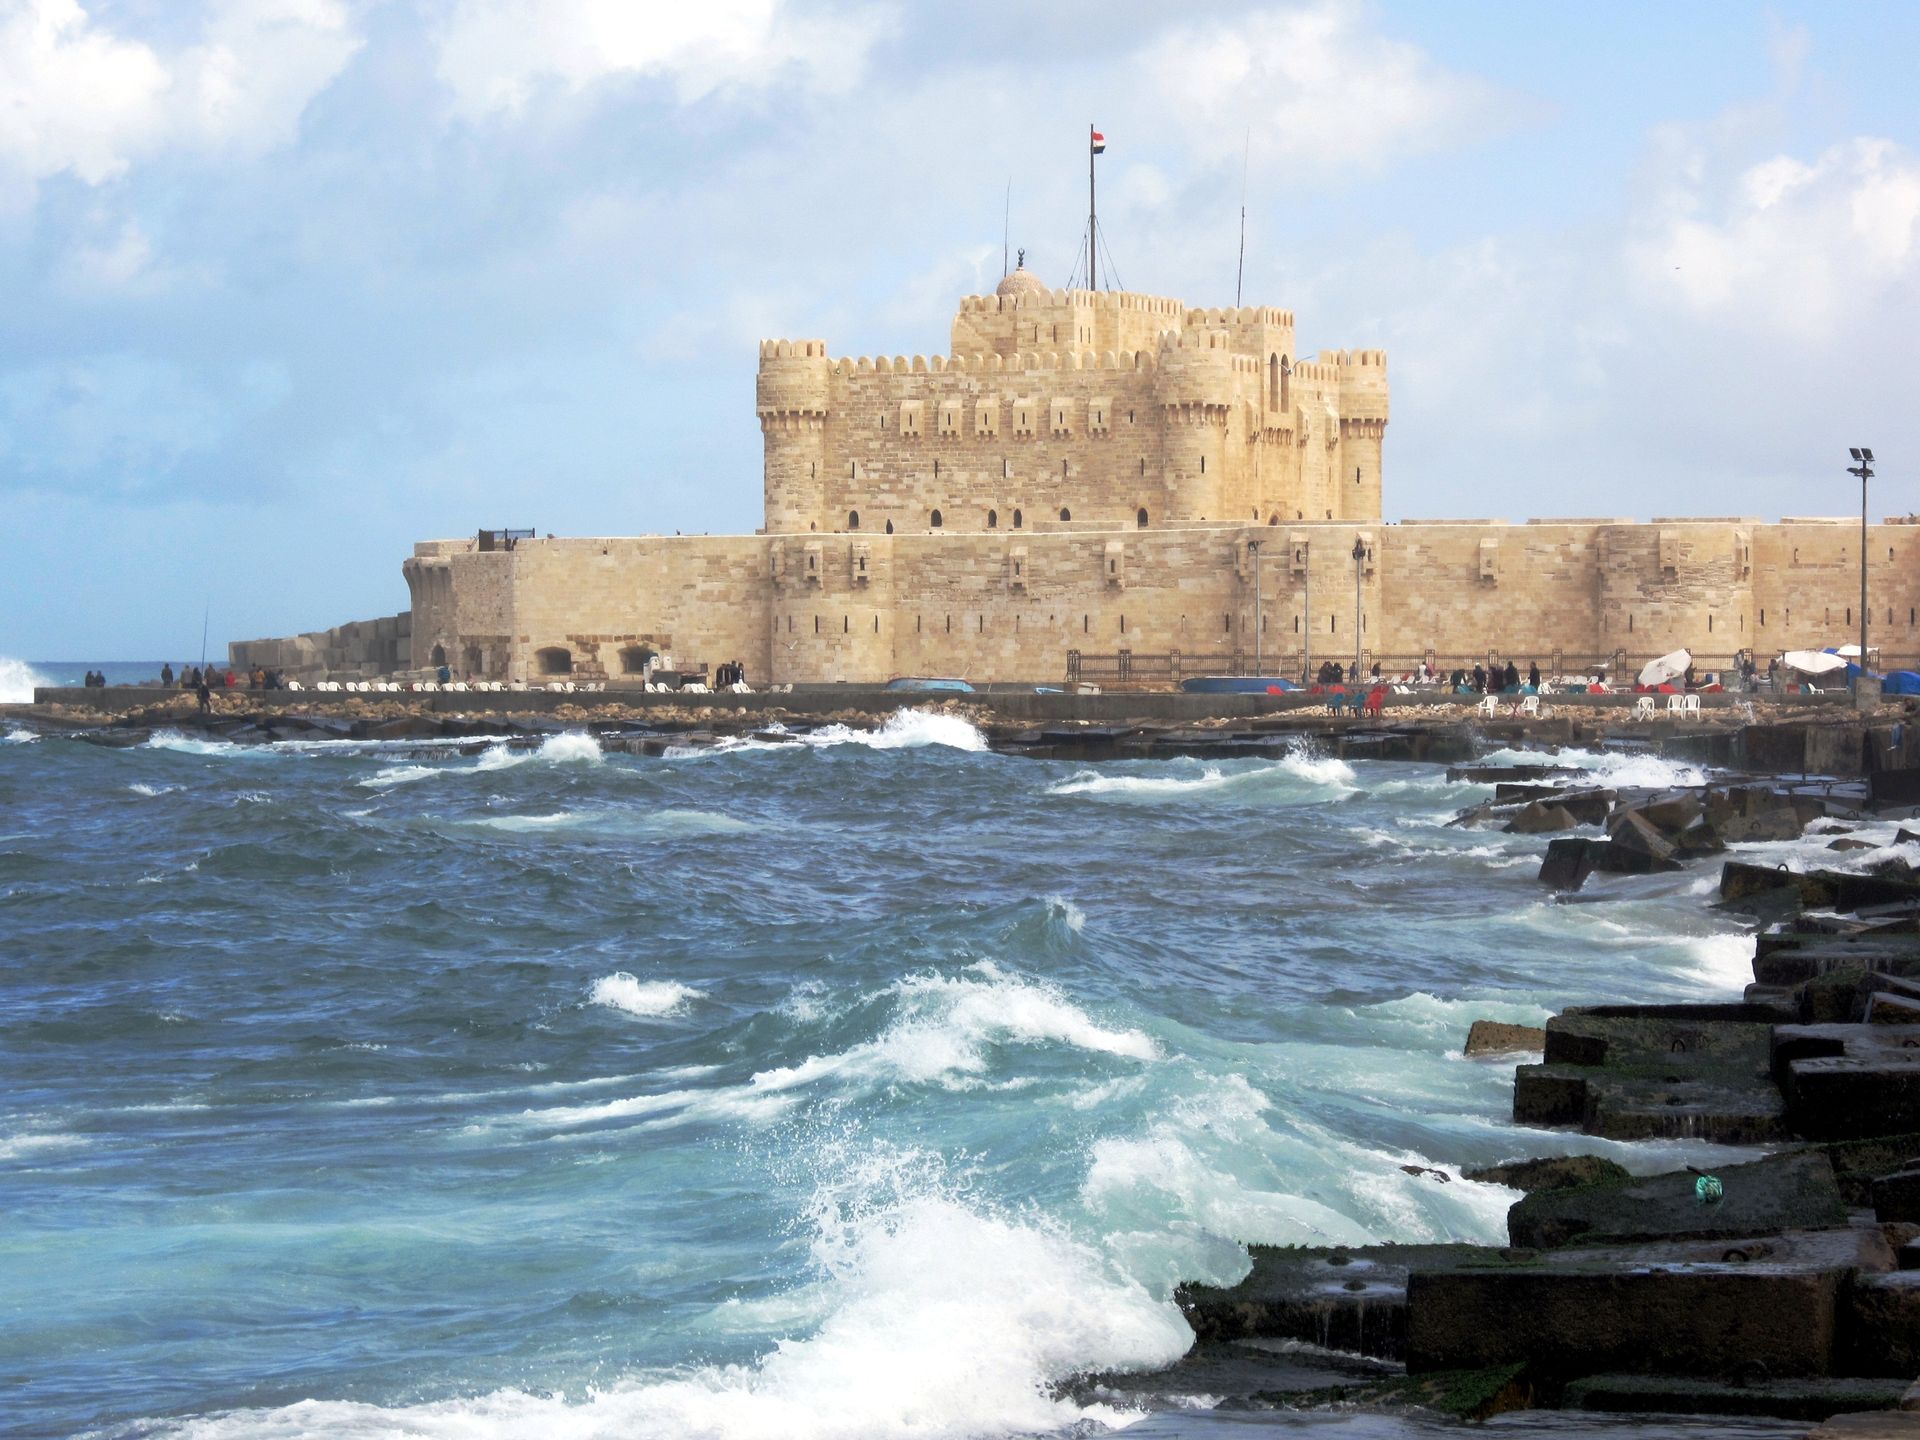 La citadelle de Qaitbay si tient à la place du légendaire Phare d’Alexandrie.